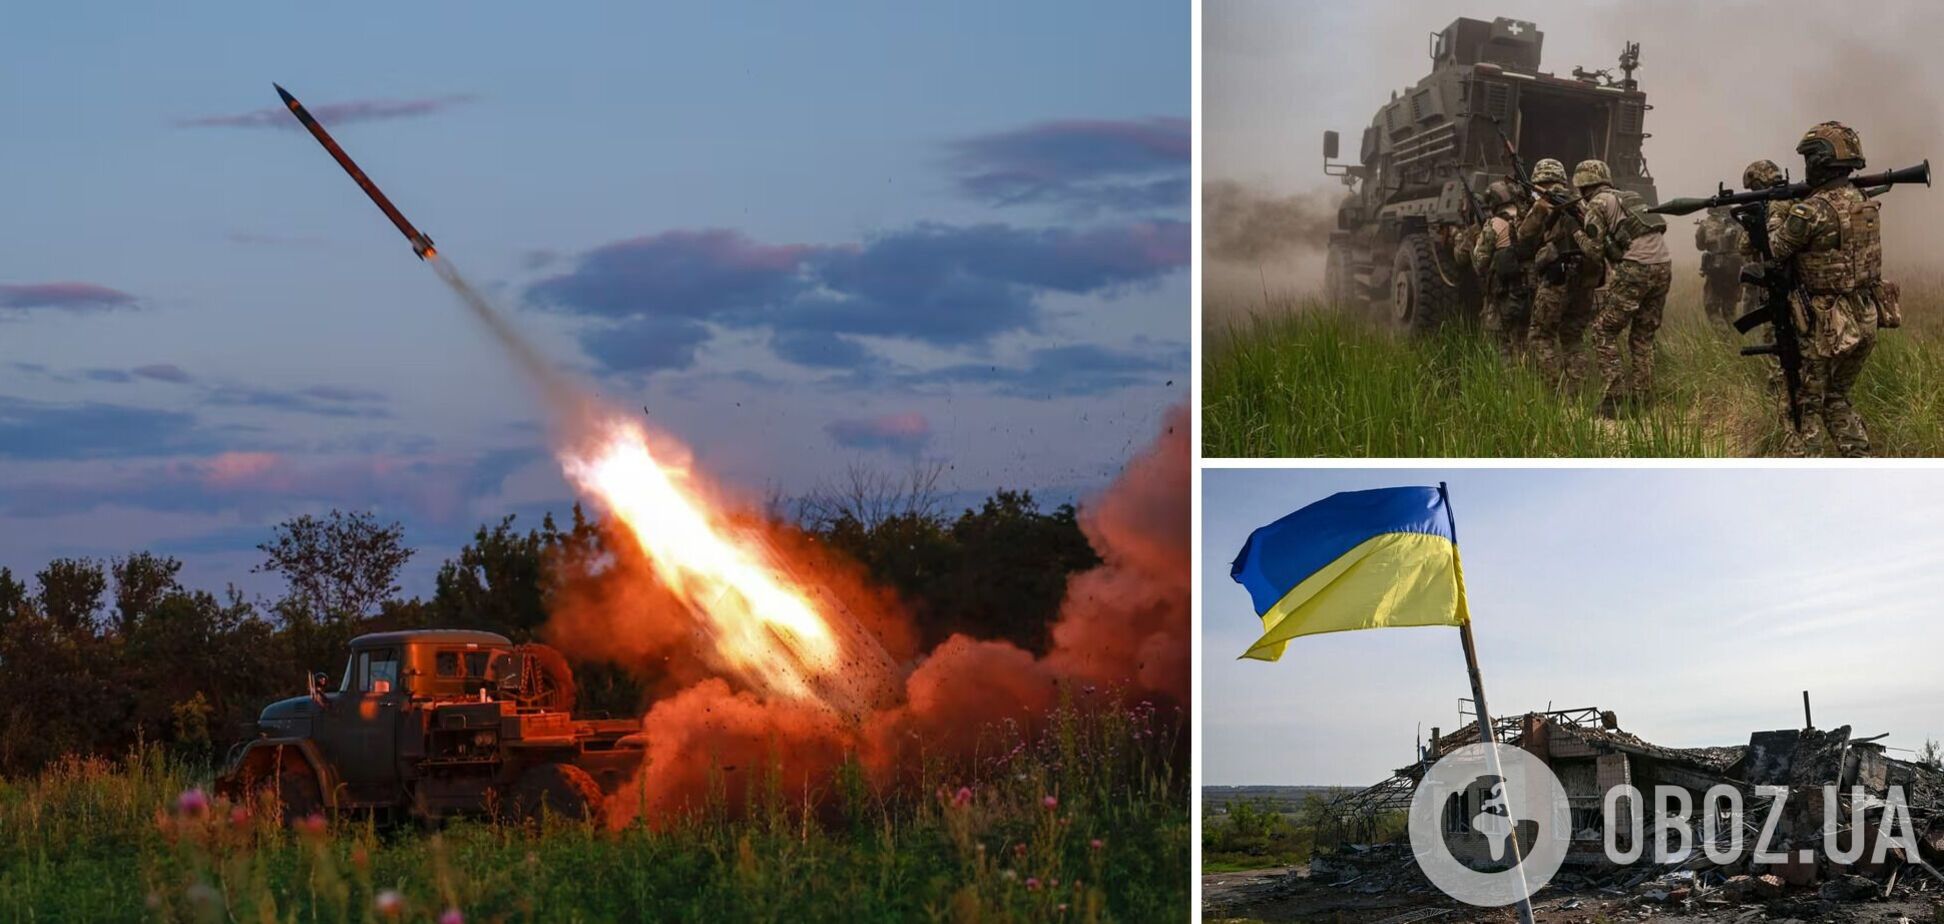 Формула мира для Запада: обеспечить победу Украины, чтобы не воевать самим